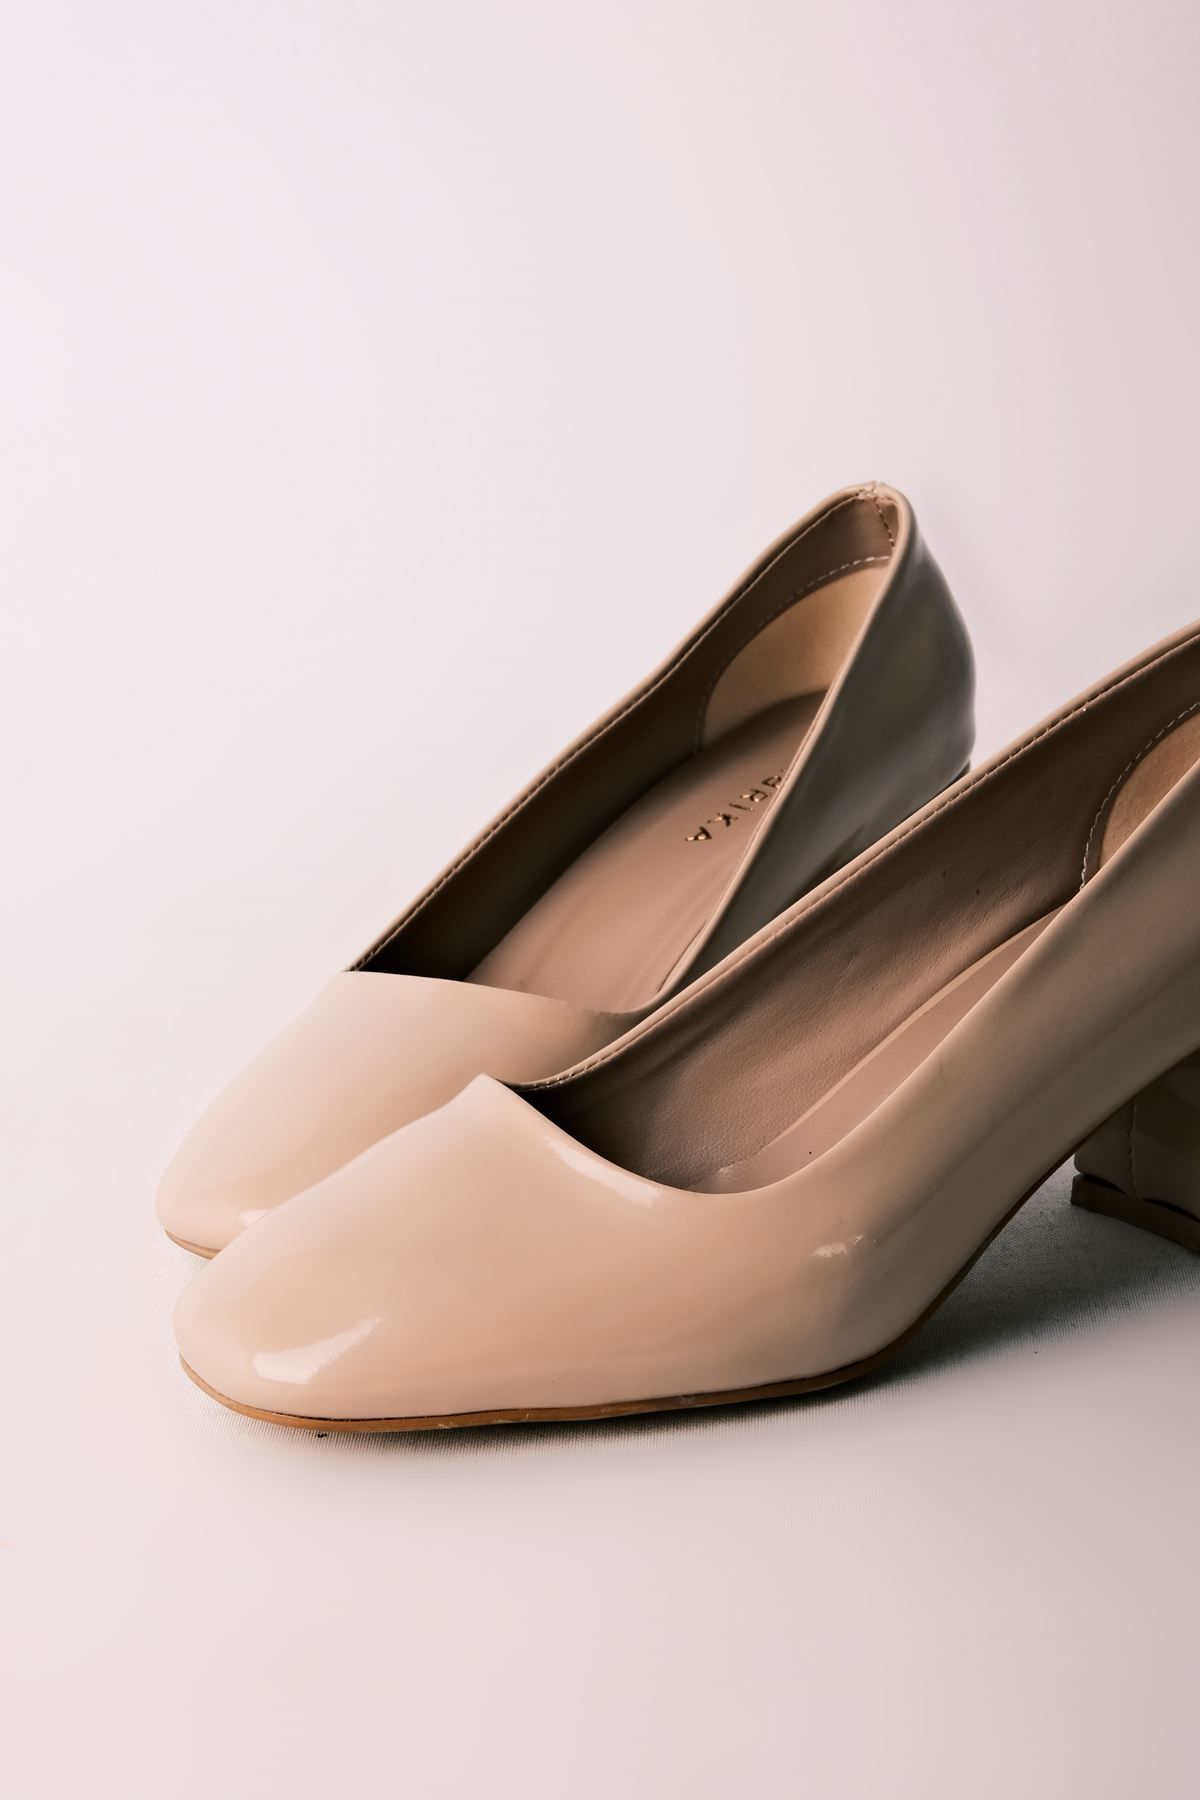 Edna Kadın Topuklu Ayakkabı Yuvarlak Burun-rugan krem